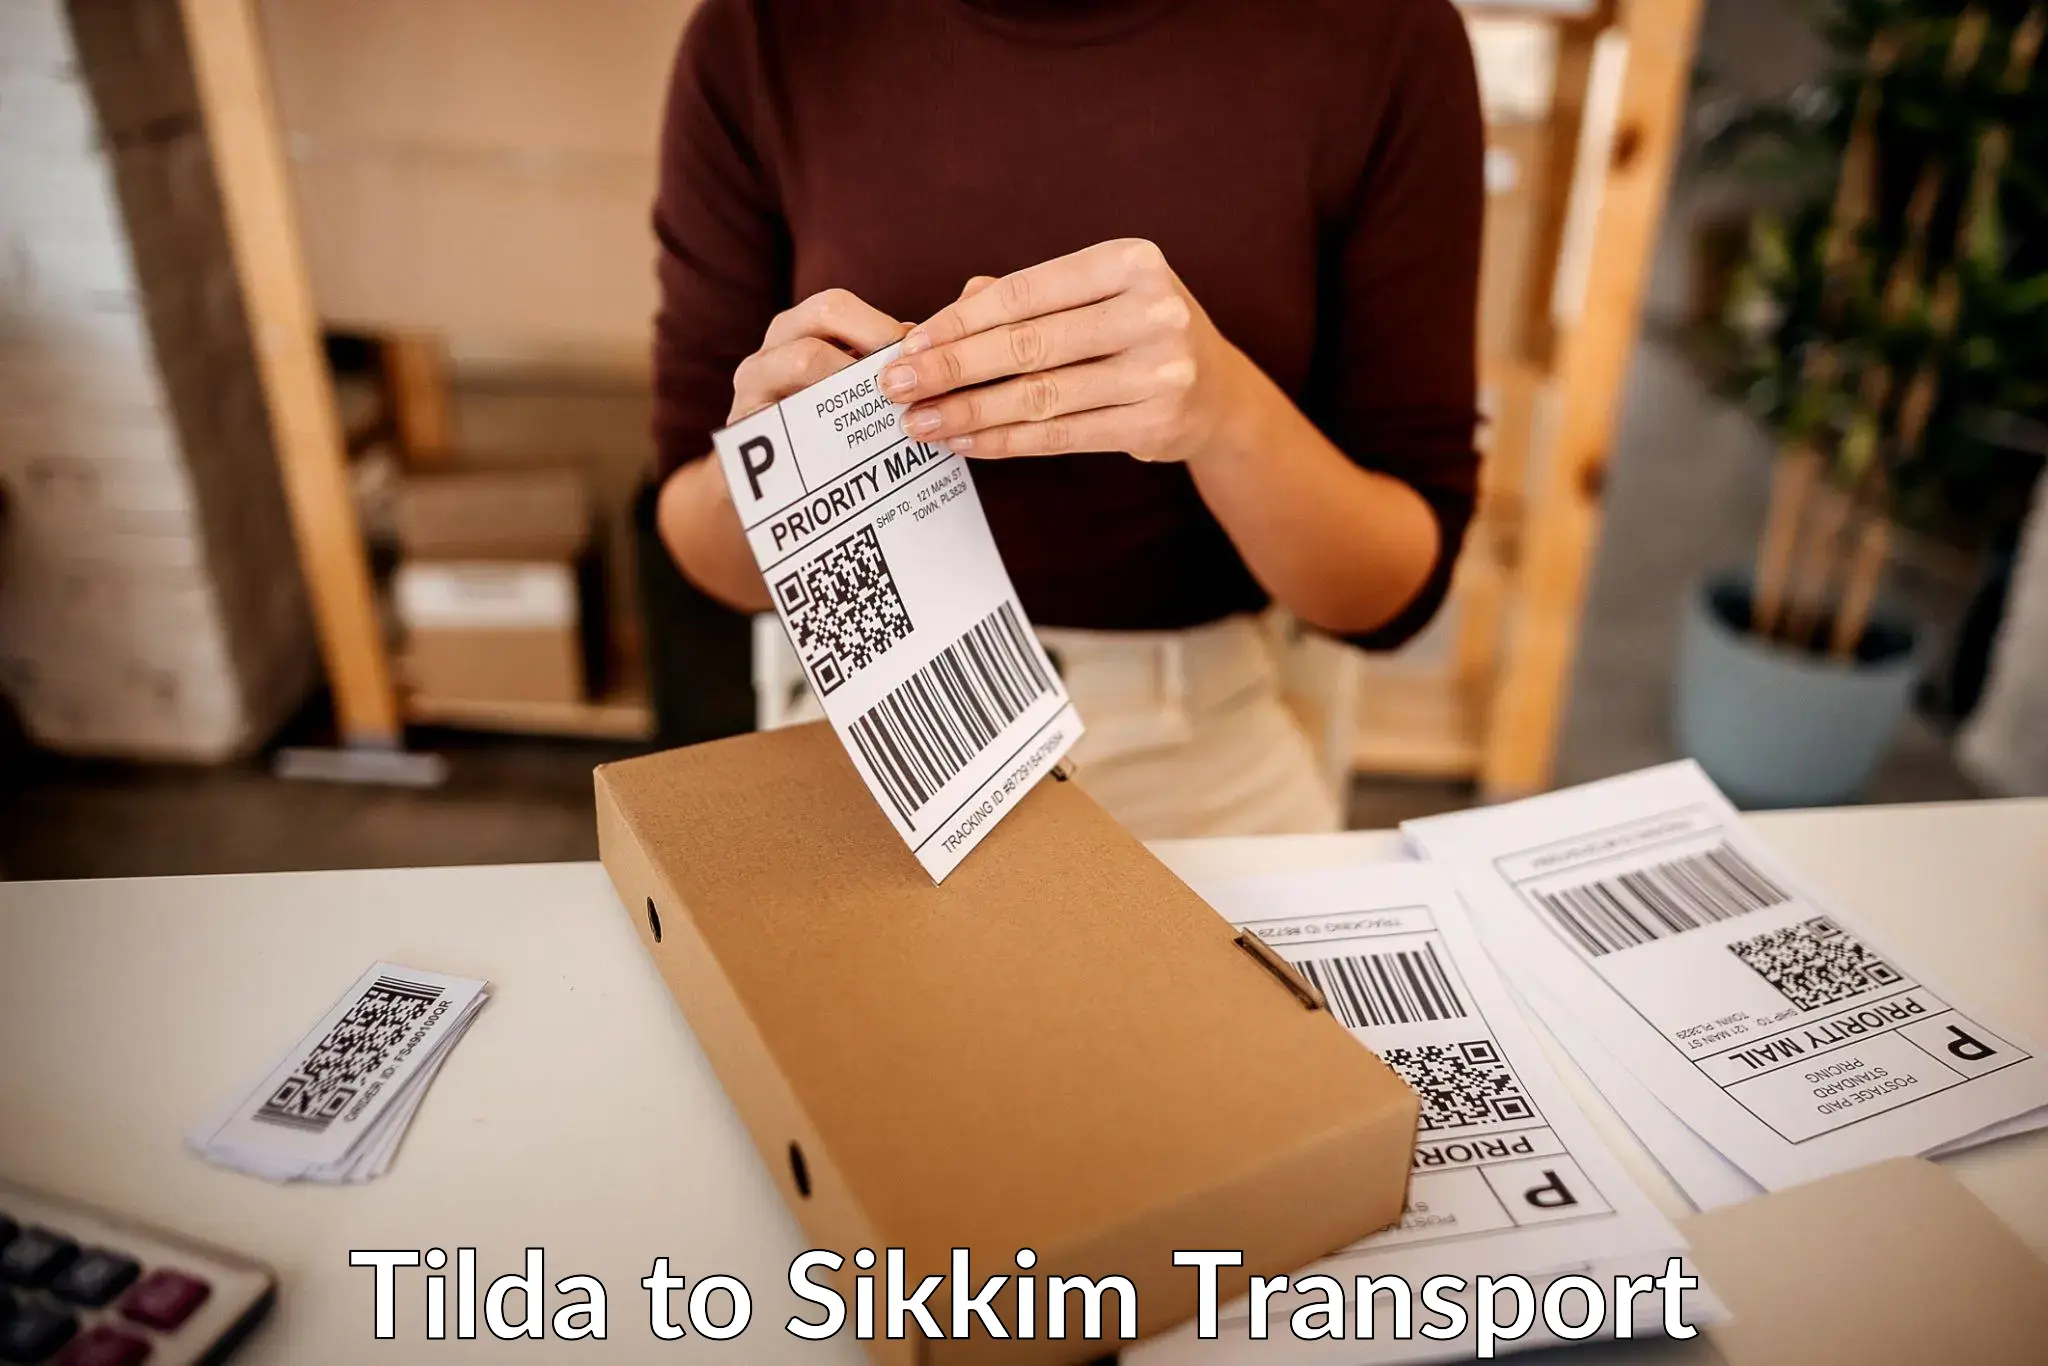 Online transport service Tilda to East Sikkim